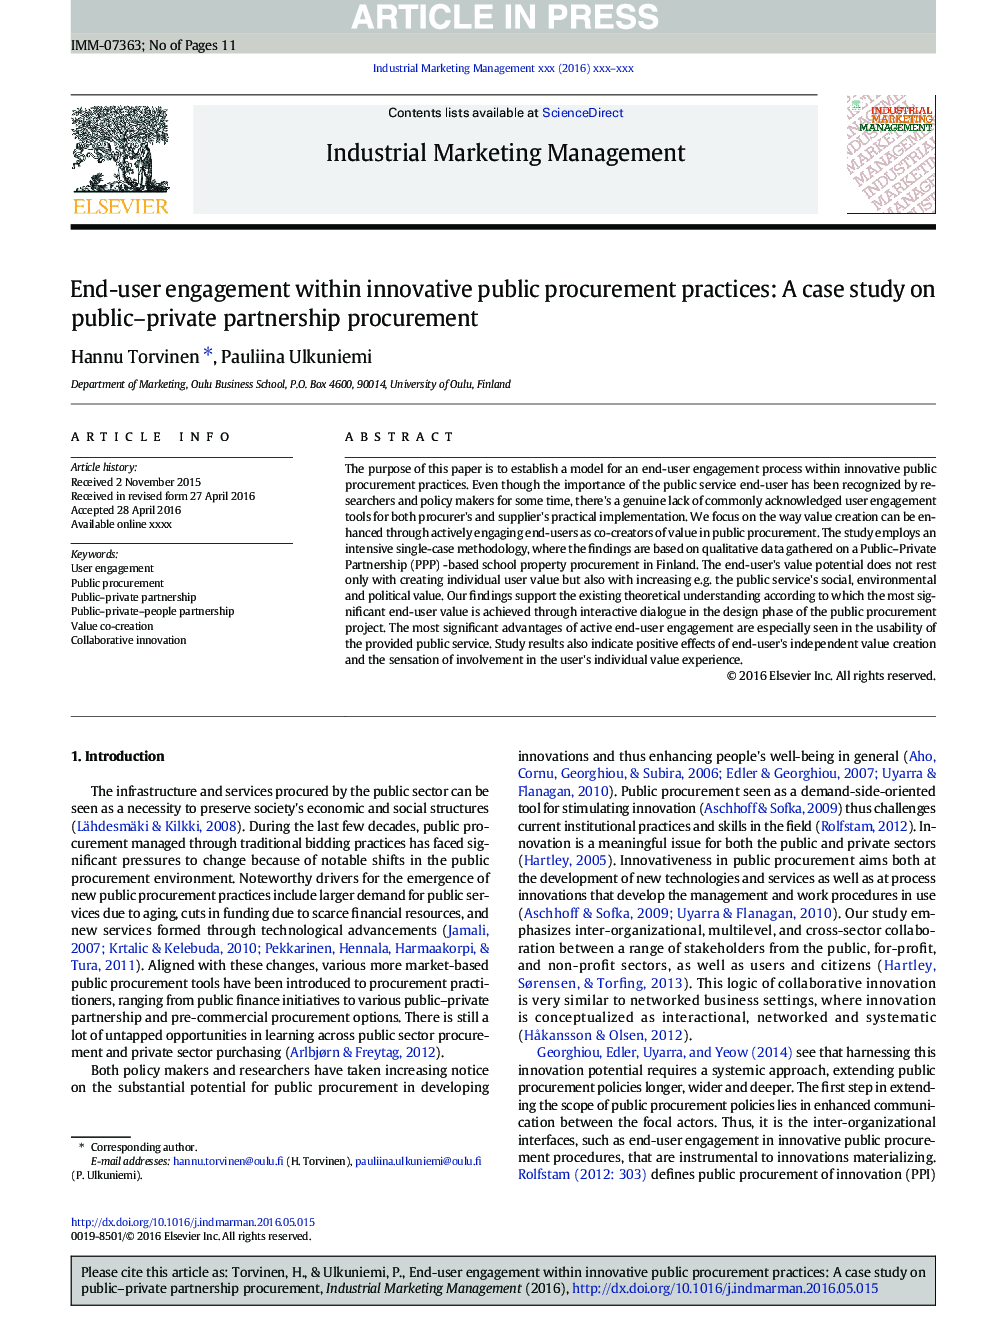 تعامل کاربر نهایی با روشهای نوآوری عمومی: مطالعه موردی در مورد تدارک مشارکت عمومی و خصوصی 